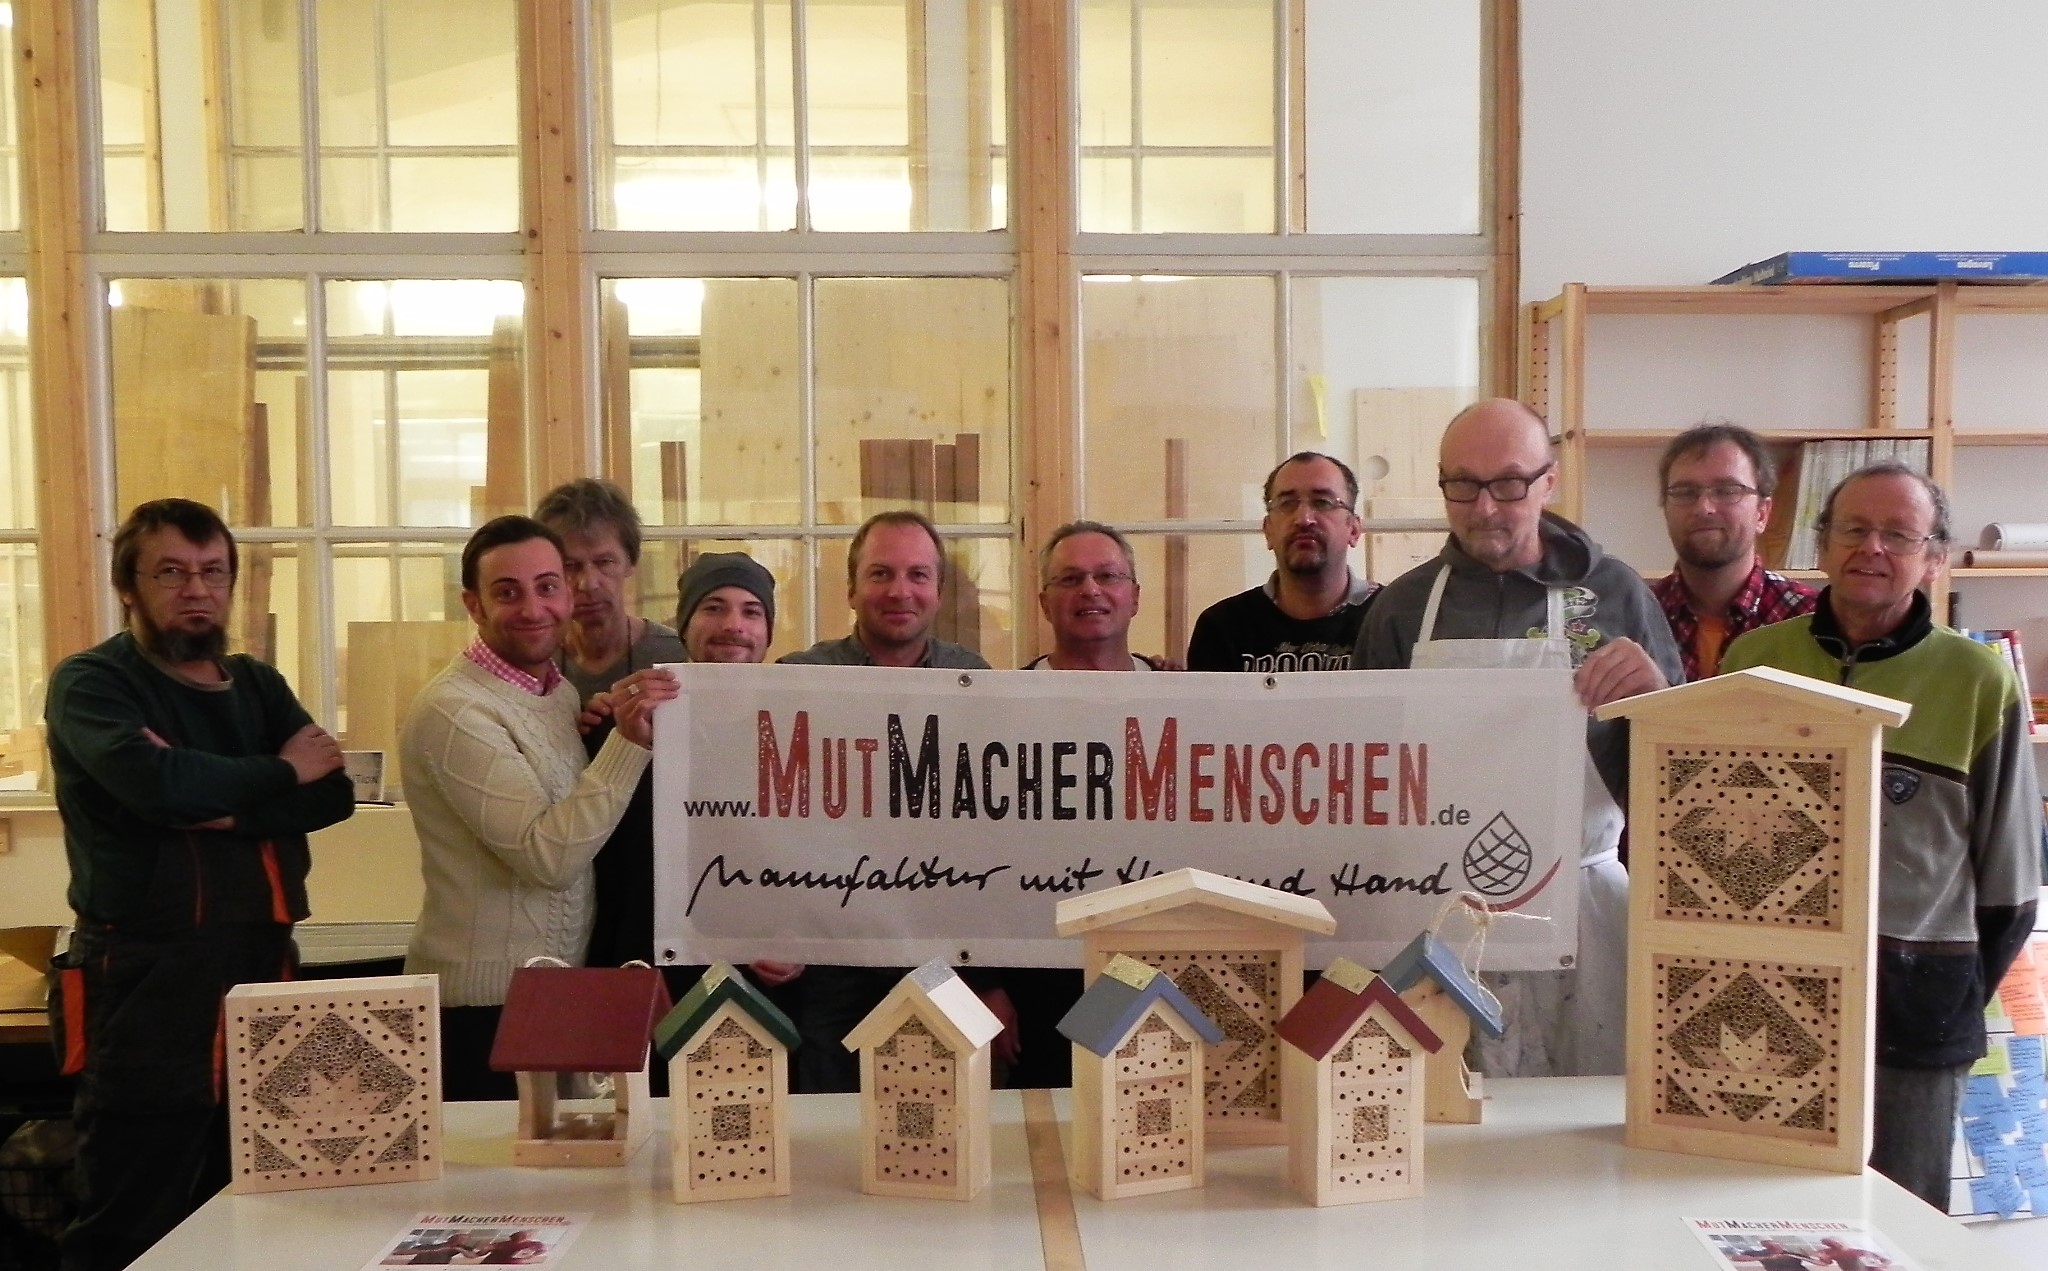 Die MutMacherMenschen stellen am Stand des Bezirks auf der afa 2018 ihre Produkte aus.